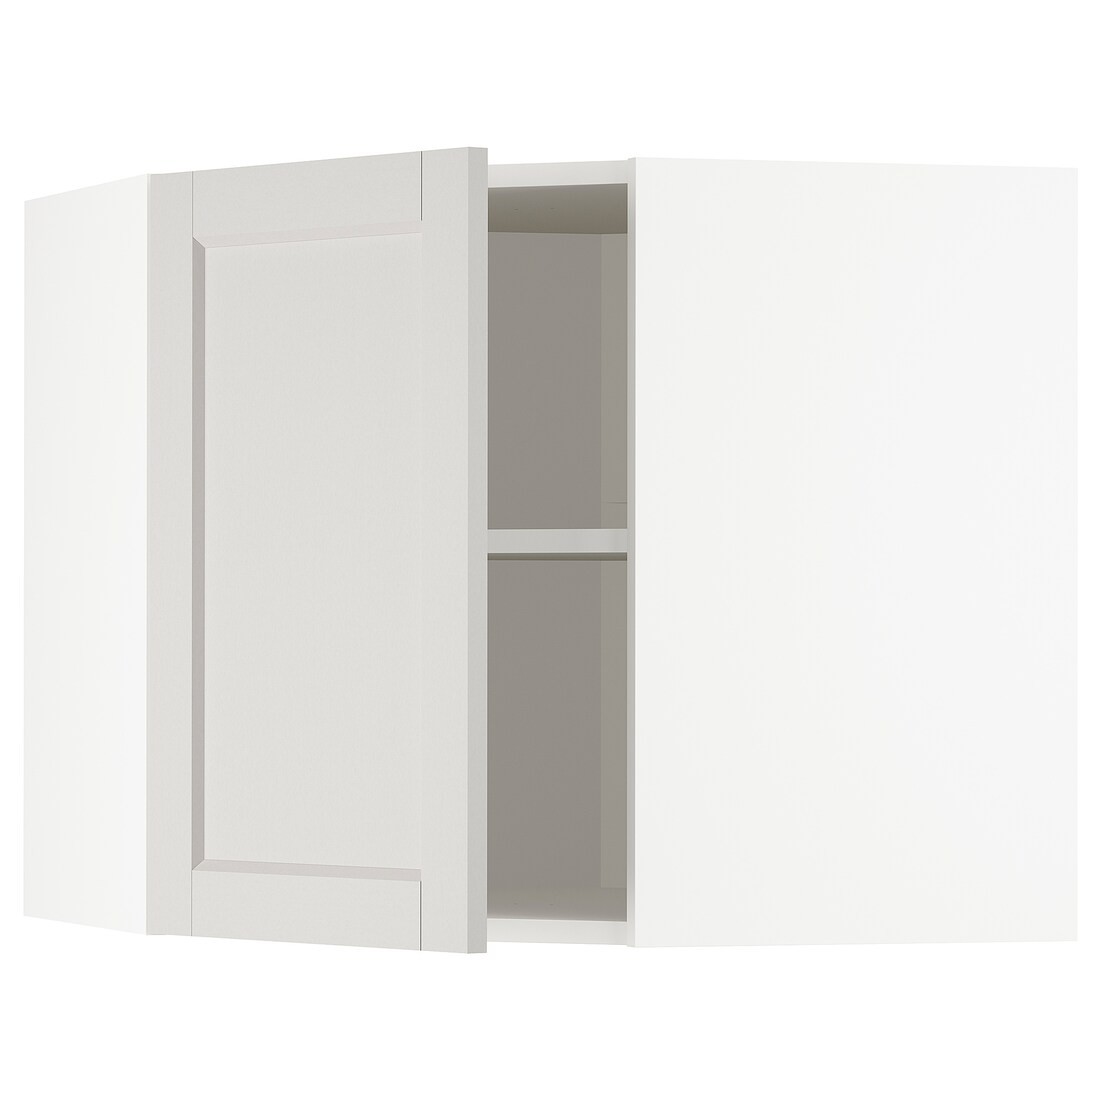 METOD МЕТОД Углов настенный шкаф, белый / Lerhyttan светло-серый, 68x60 см